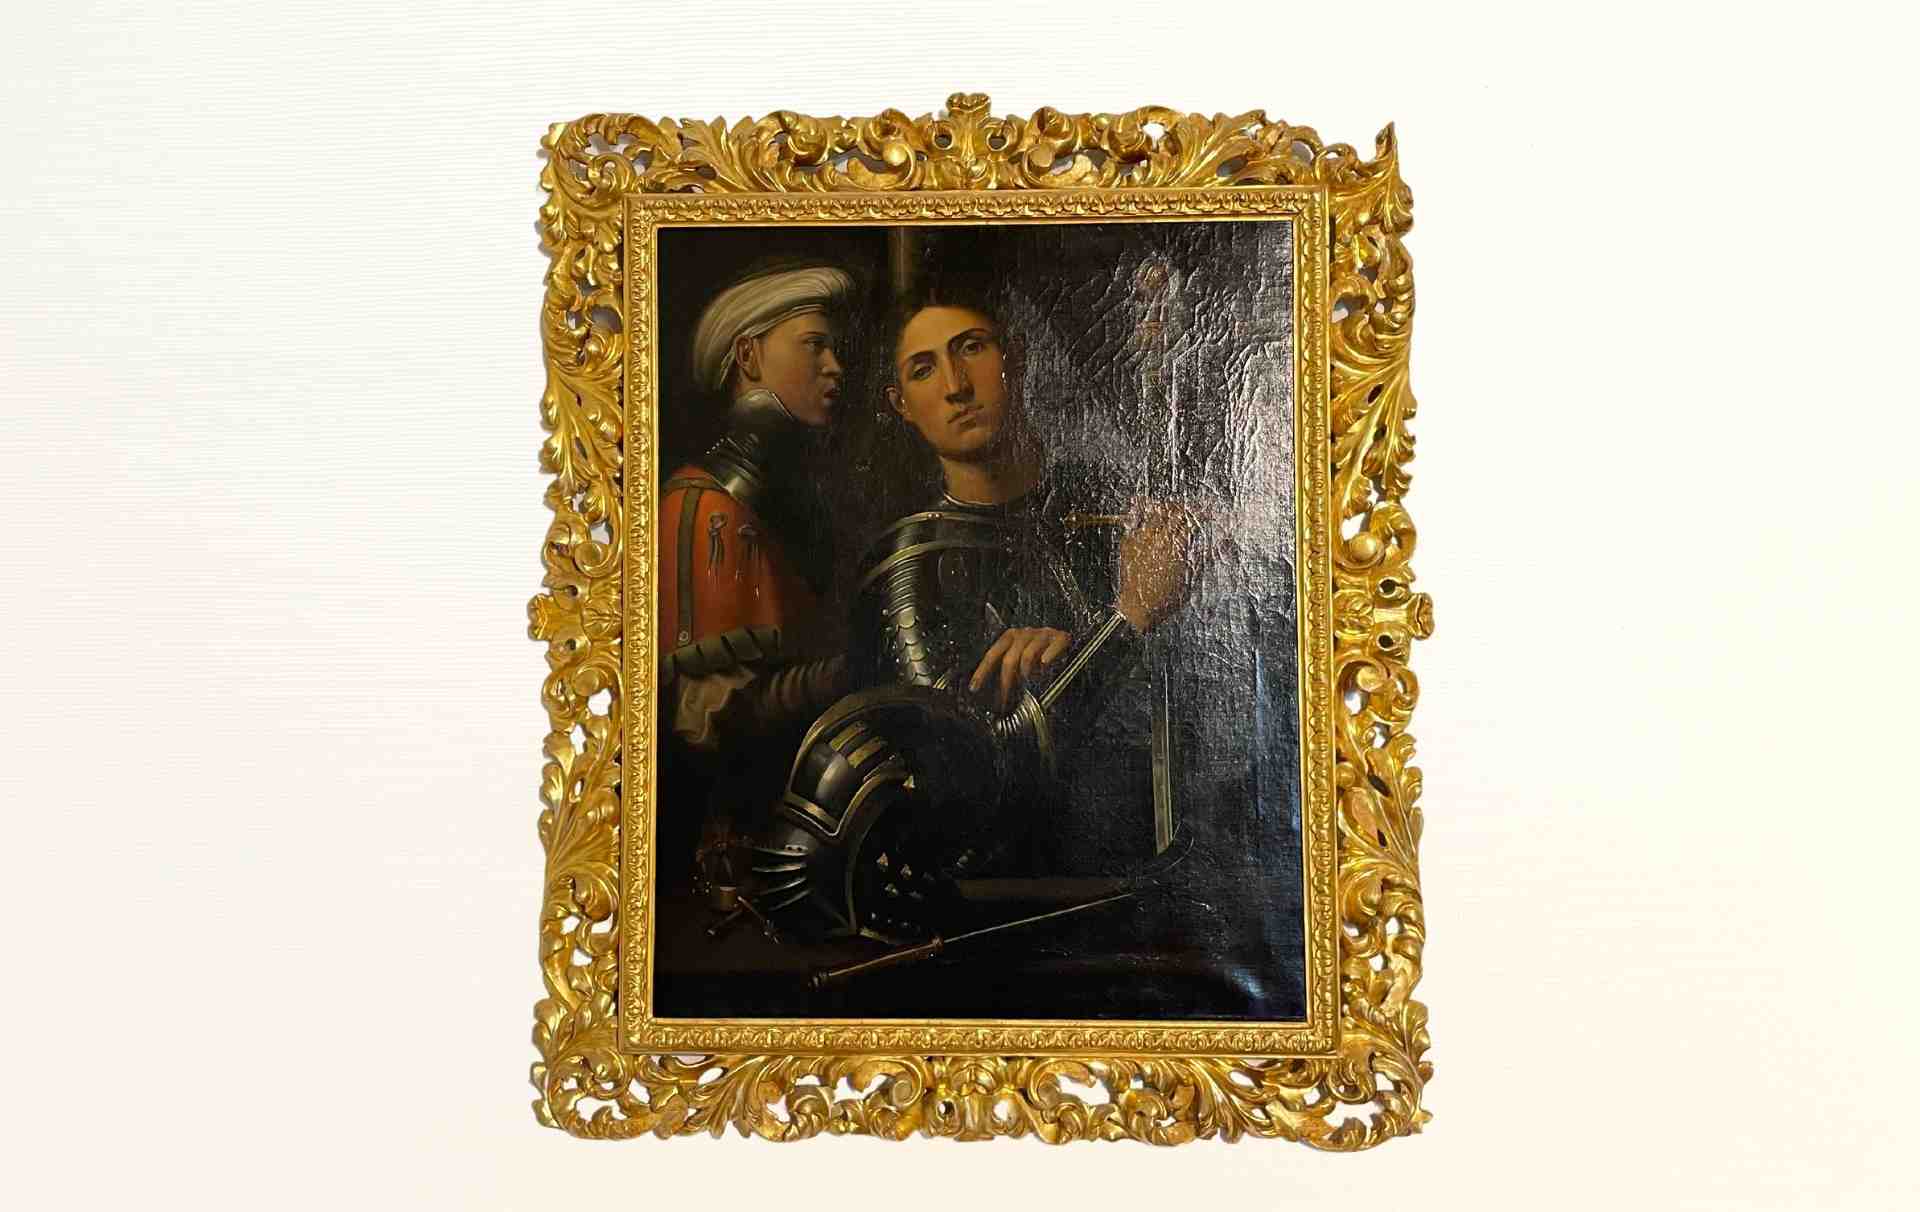 Ritratto di Erasmo da Narni nella sala a lui dedicata nel Palazzo Eroli a Narni